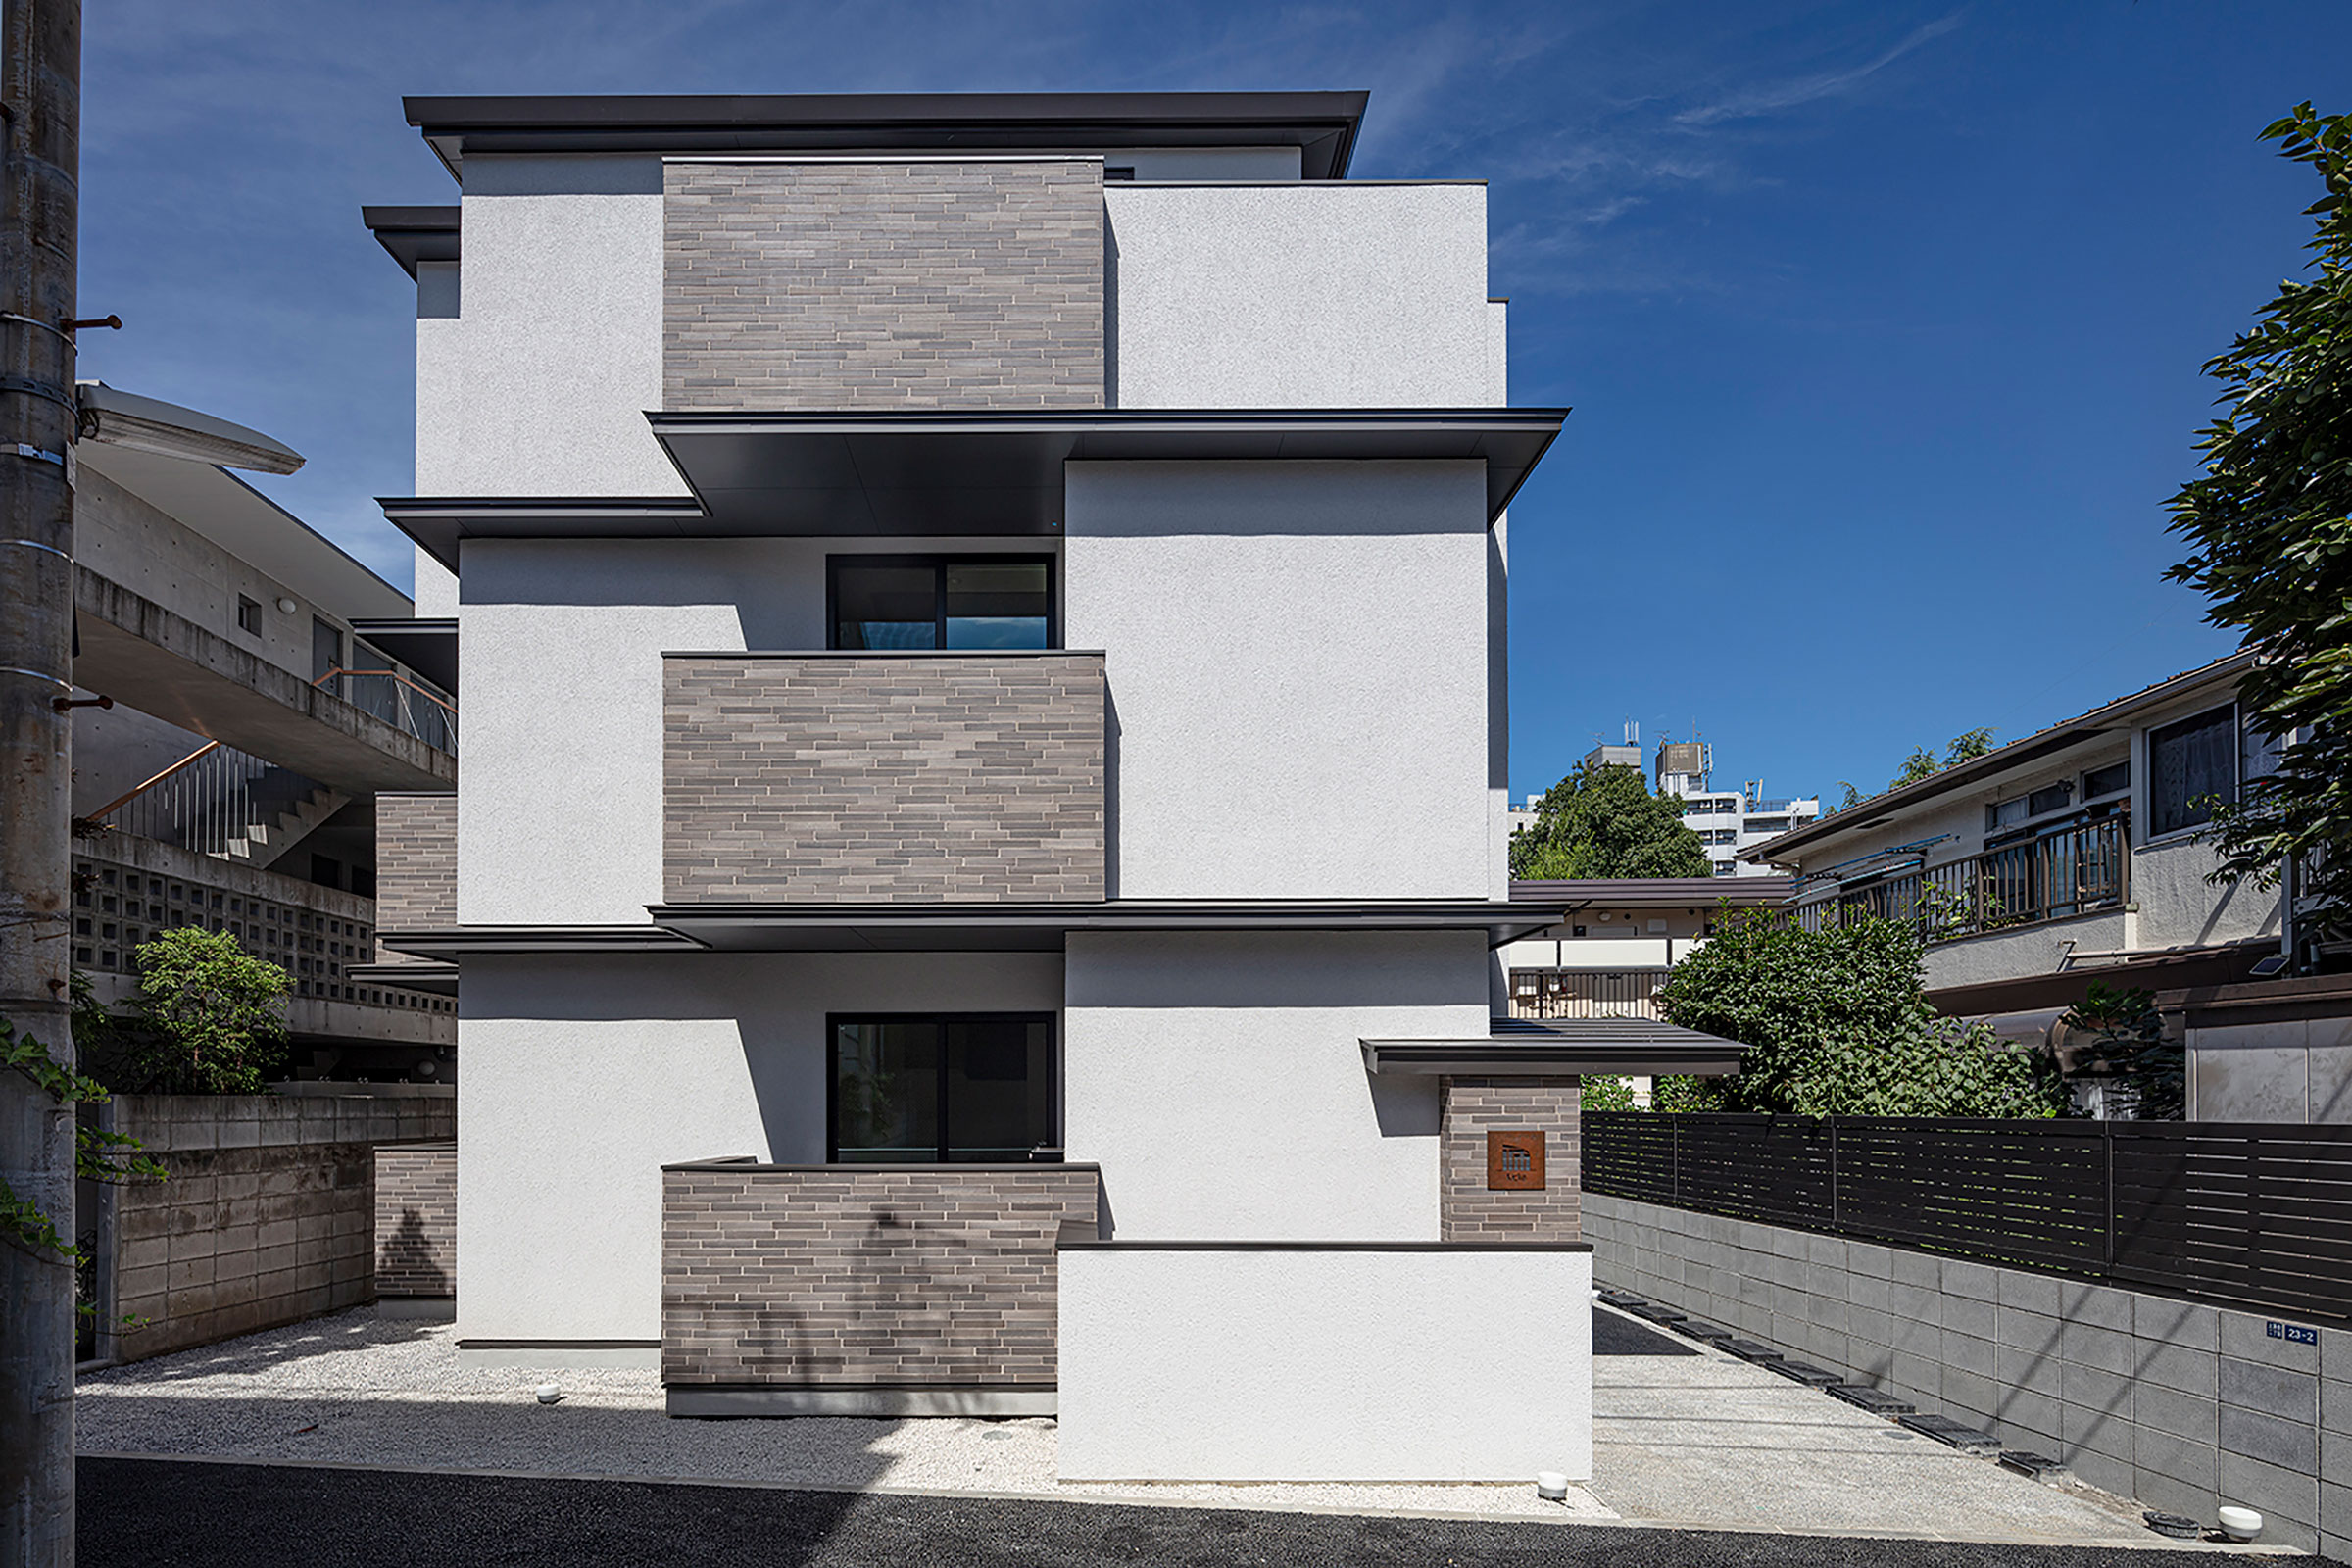 子浦中 / シオ建築設計事務所による、東京・新宿区の集合住宅「Kicka 